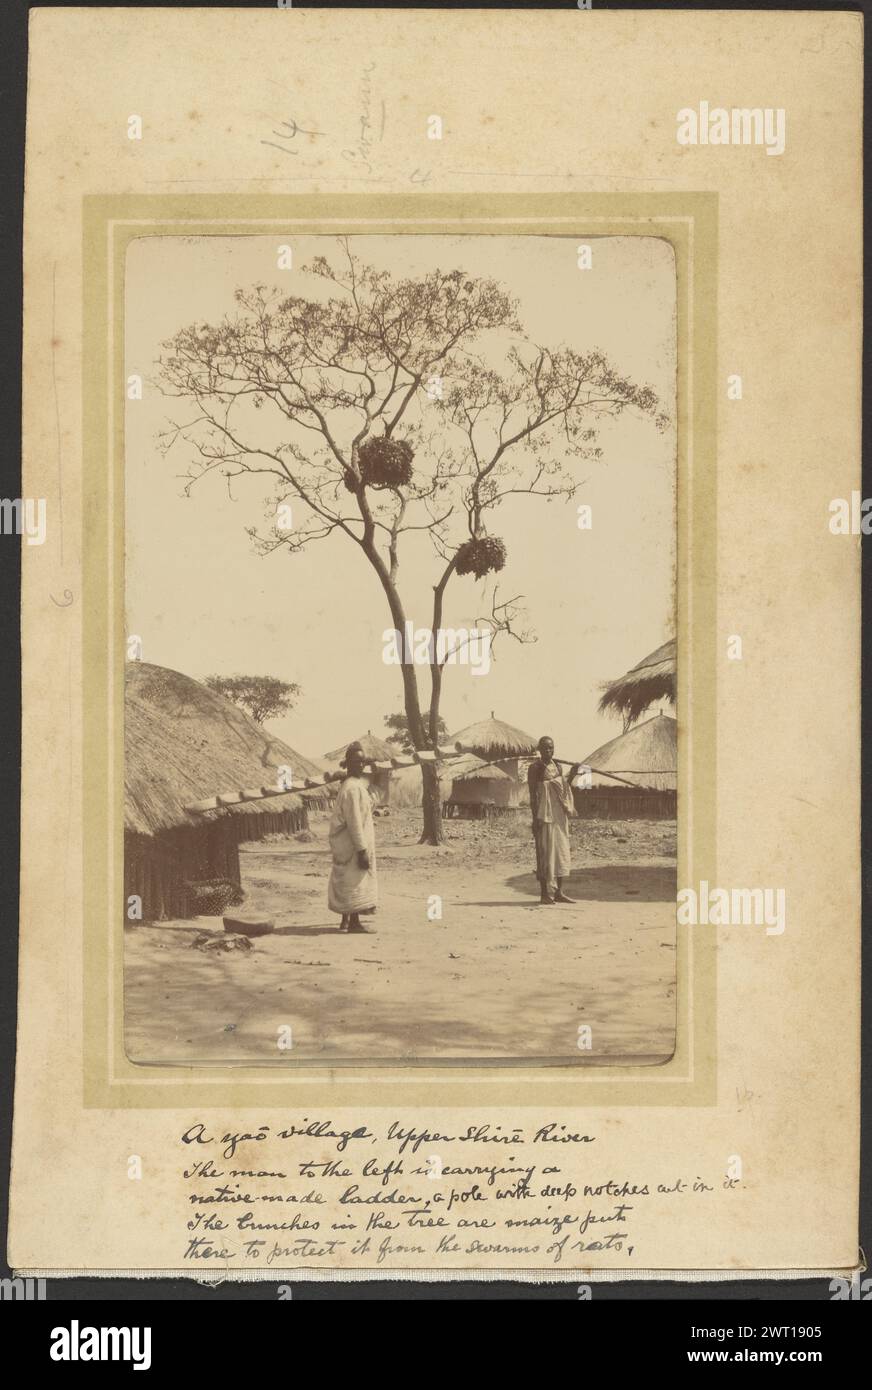 Ein gepflegtes Dorf. Unbekannt, Fotograf 1910 zwei Männer stehen mitten in einem Dorf vor einem Baum. Einer der Männer trägt eine Leiter, ein gekerbtes Stück Holz, über seine Schulter. Der andere hält einen gebogenen Stab über der Schulter. Der Baum hat Maisbündel, die an den Zweigen hängen. (Recto, Mount) oben in der Mitte, Bleistift: „14/Swann/4“; (Recto, Mount) Mitte links, Bleistift: '6'; (Recto, Mount) unten in der Mitte, schwarze Tinte: 'ein yao-Dorf, Upper Shire River/der Mann links trägt eine/einheimische Leiter, ein Stab mit tiefen Kerben darin geschnitten./die Bündel im Baum sind Mais-pu Stockfoto